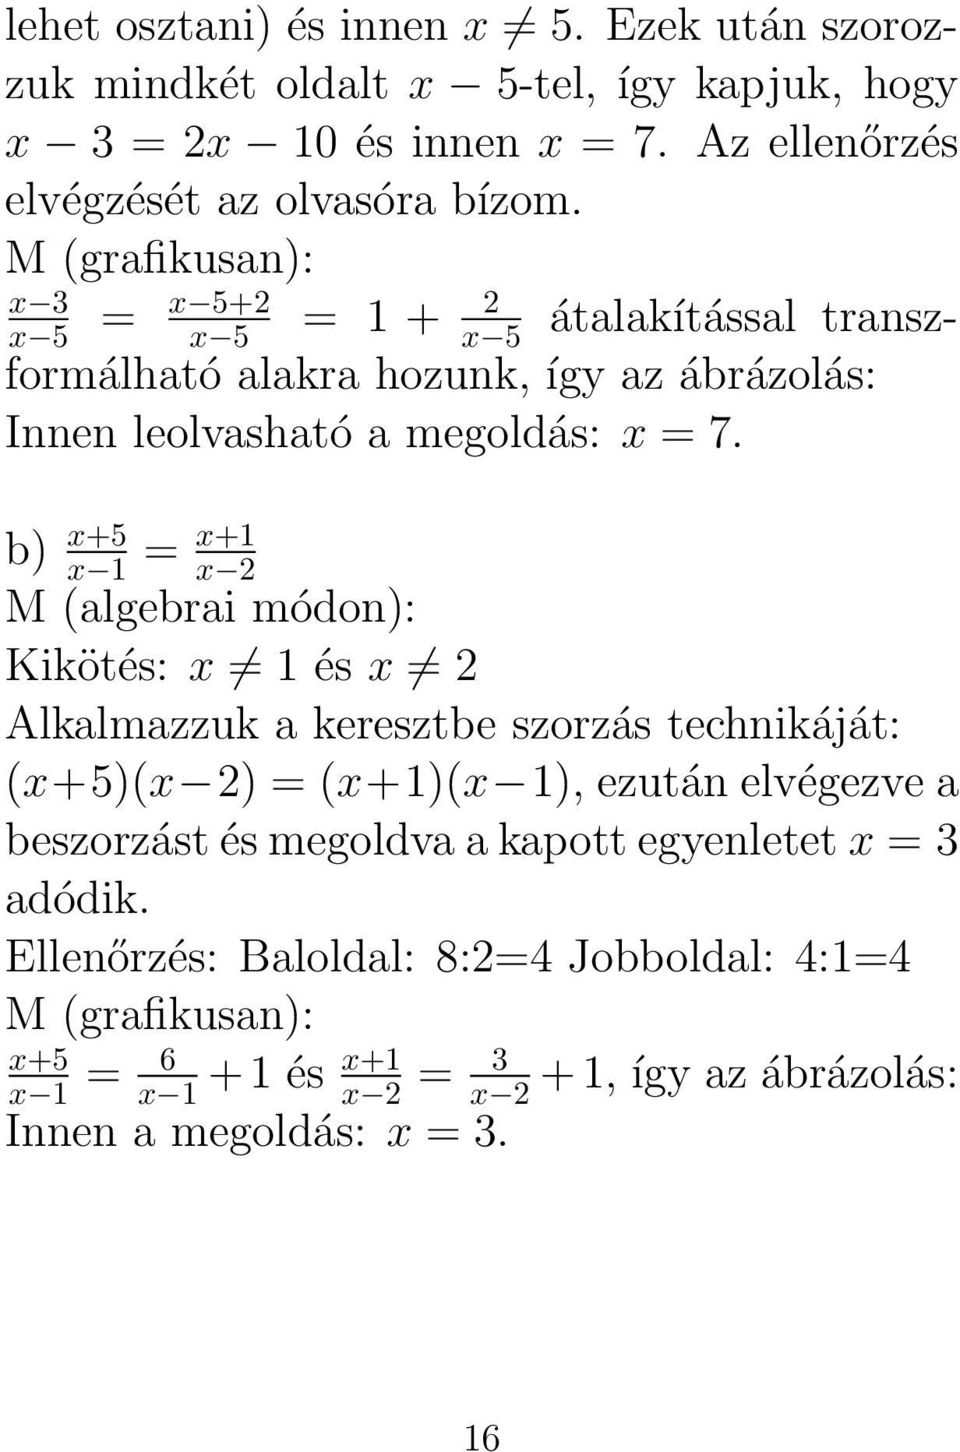 b) x+5 x 1 = x+1 x 2 M (algebrai módon): Kikötés: x 1 és x 2 Alkalmazzuk a keresztbe szorzás technikáját: (x+5)(x 2) = (x+1)(x 1), ezután elvégezve a beszorzást és